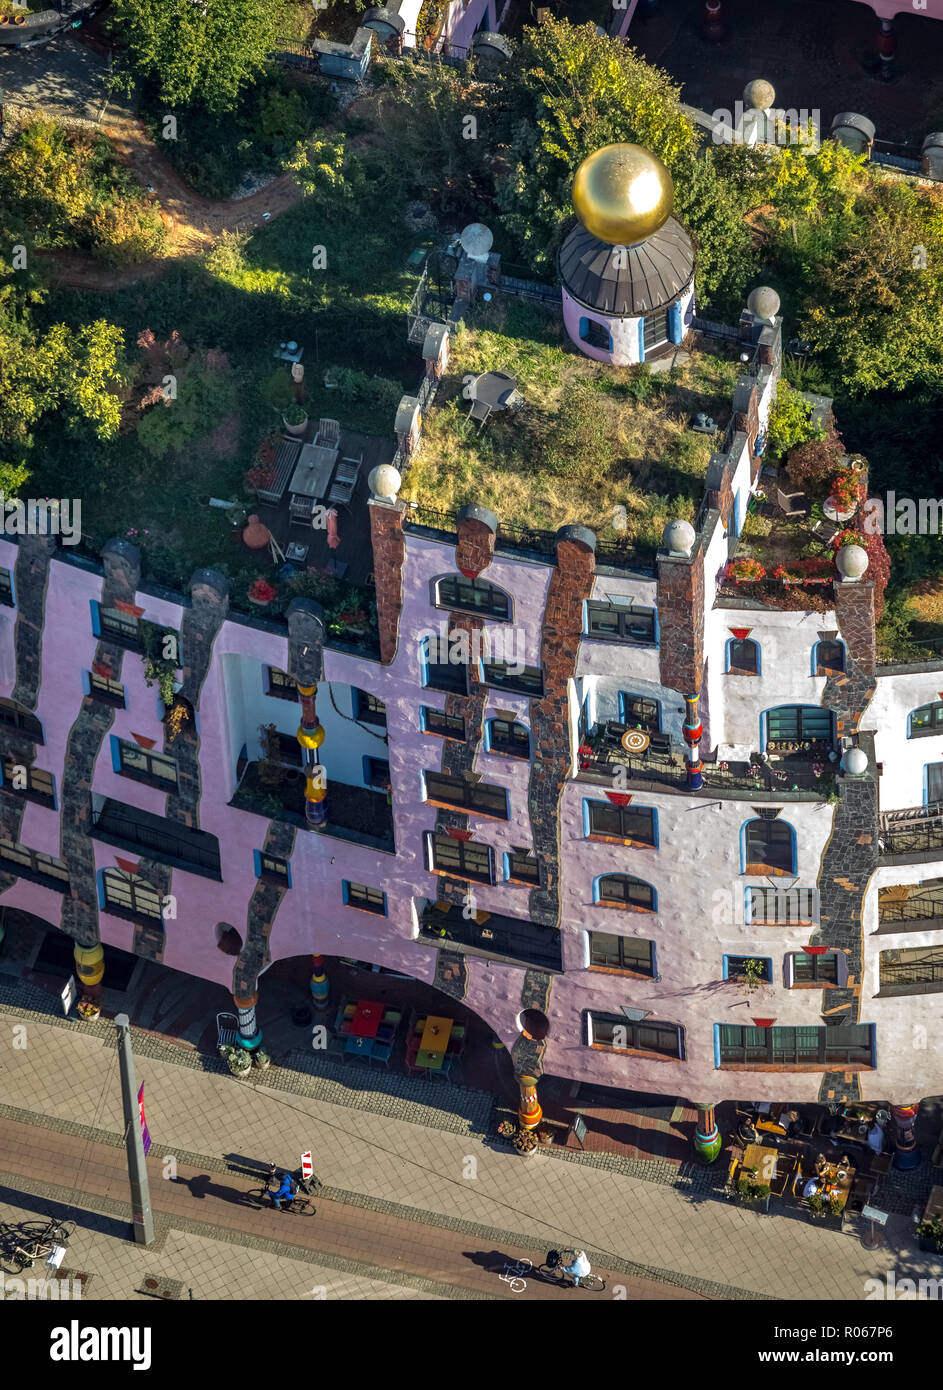 Vista aérea de la Ciudadela, Verde, la casa Hundertwasser, el Arthotel Magdeburg, Magdeburg-Altstadt, Magdeburgo, Sajonia-Anhalt, Alemania, DEU, Europa, vista aérea Foto de stock